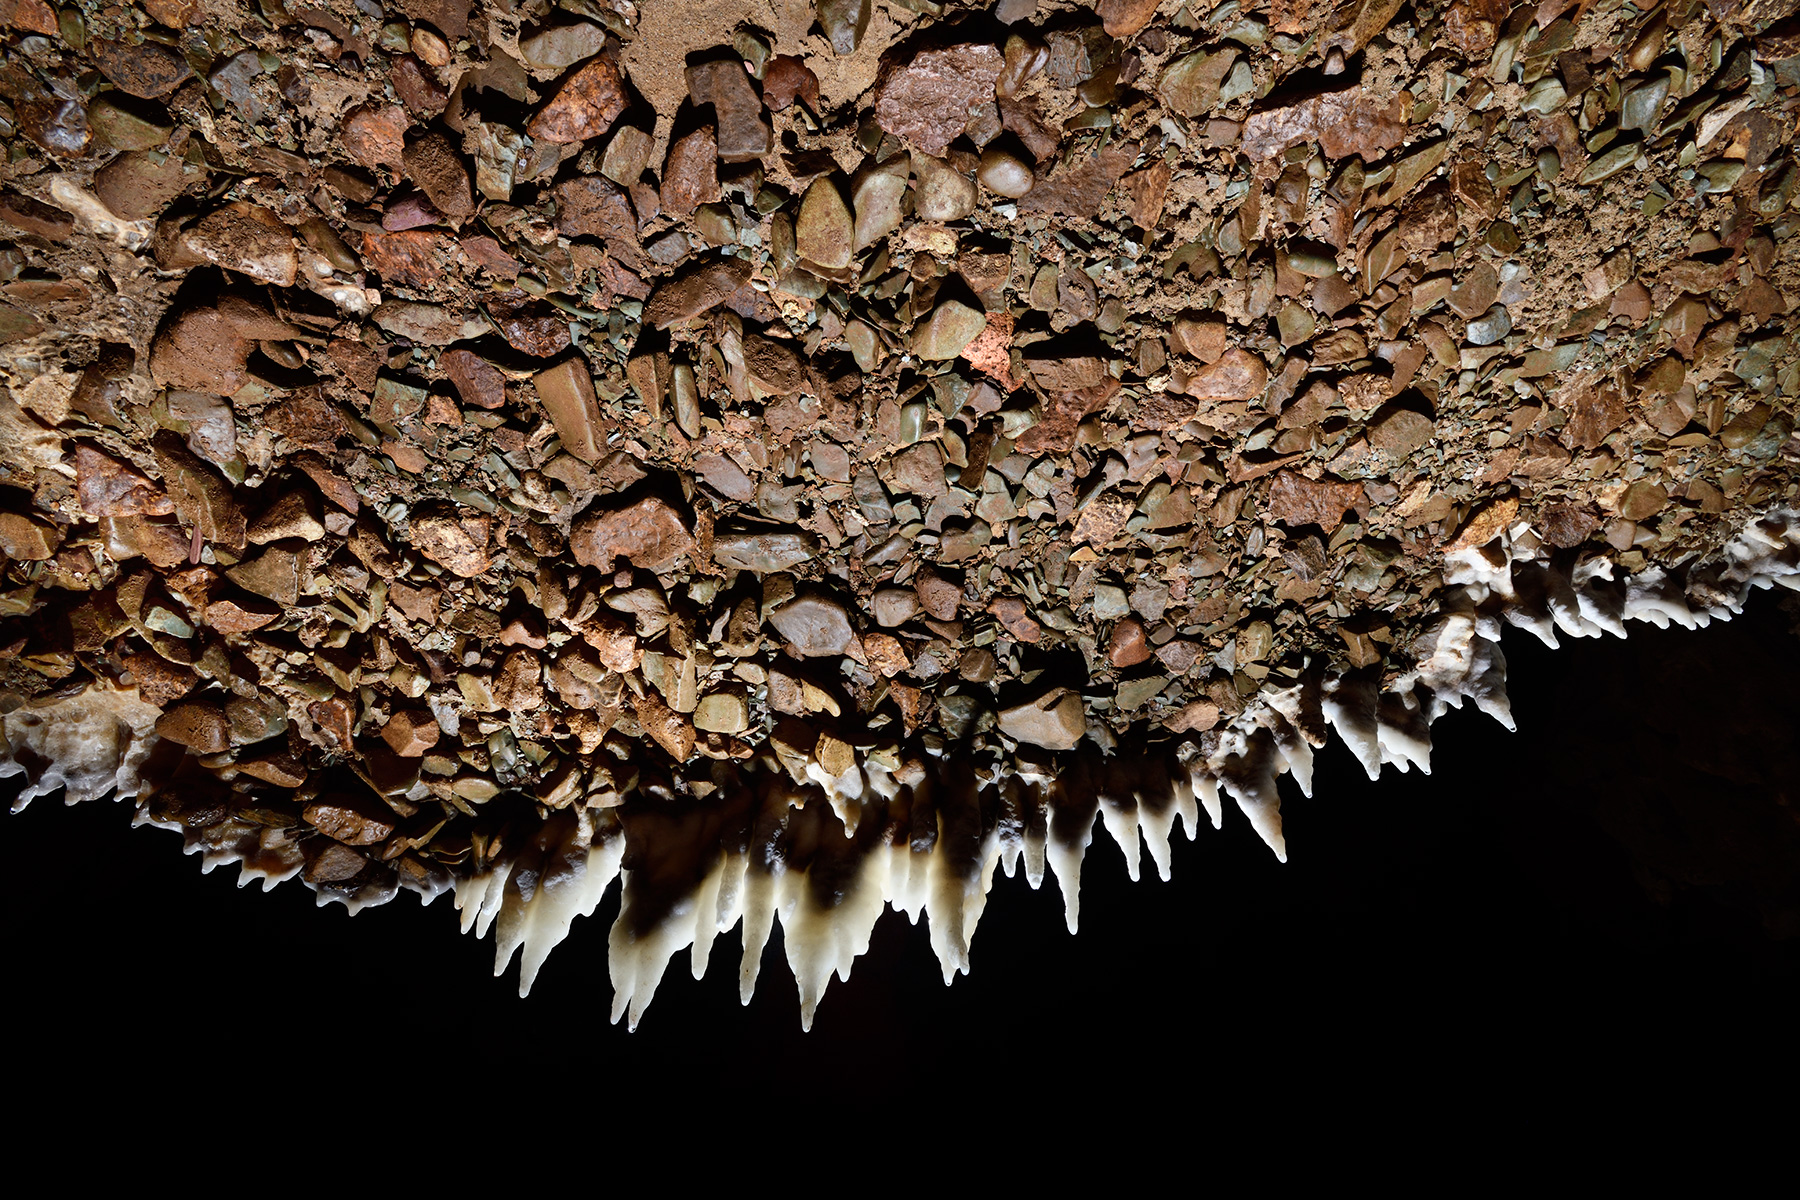 Grotte d'Orquette (Hérault) - Reste d'un remplissage de galets déposés par la rivière vu par dessous, avec des stalactites se développant sur sa bordure. Ces galets sont soudés par la calcite